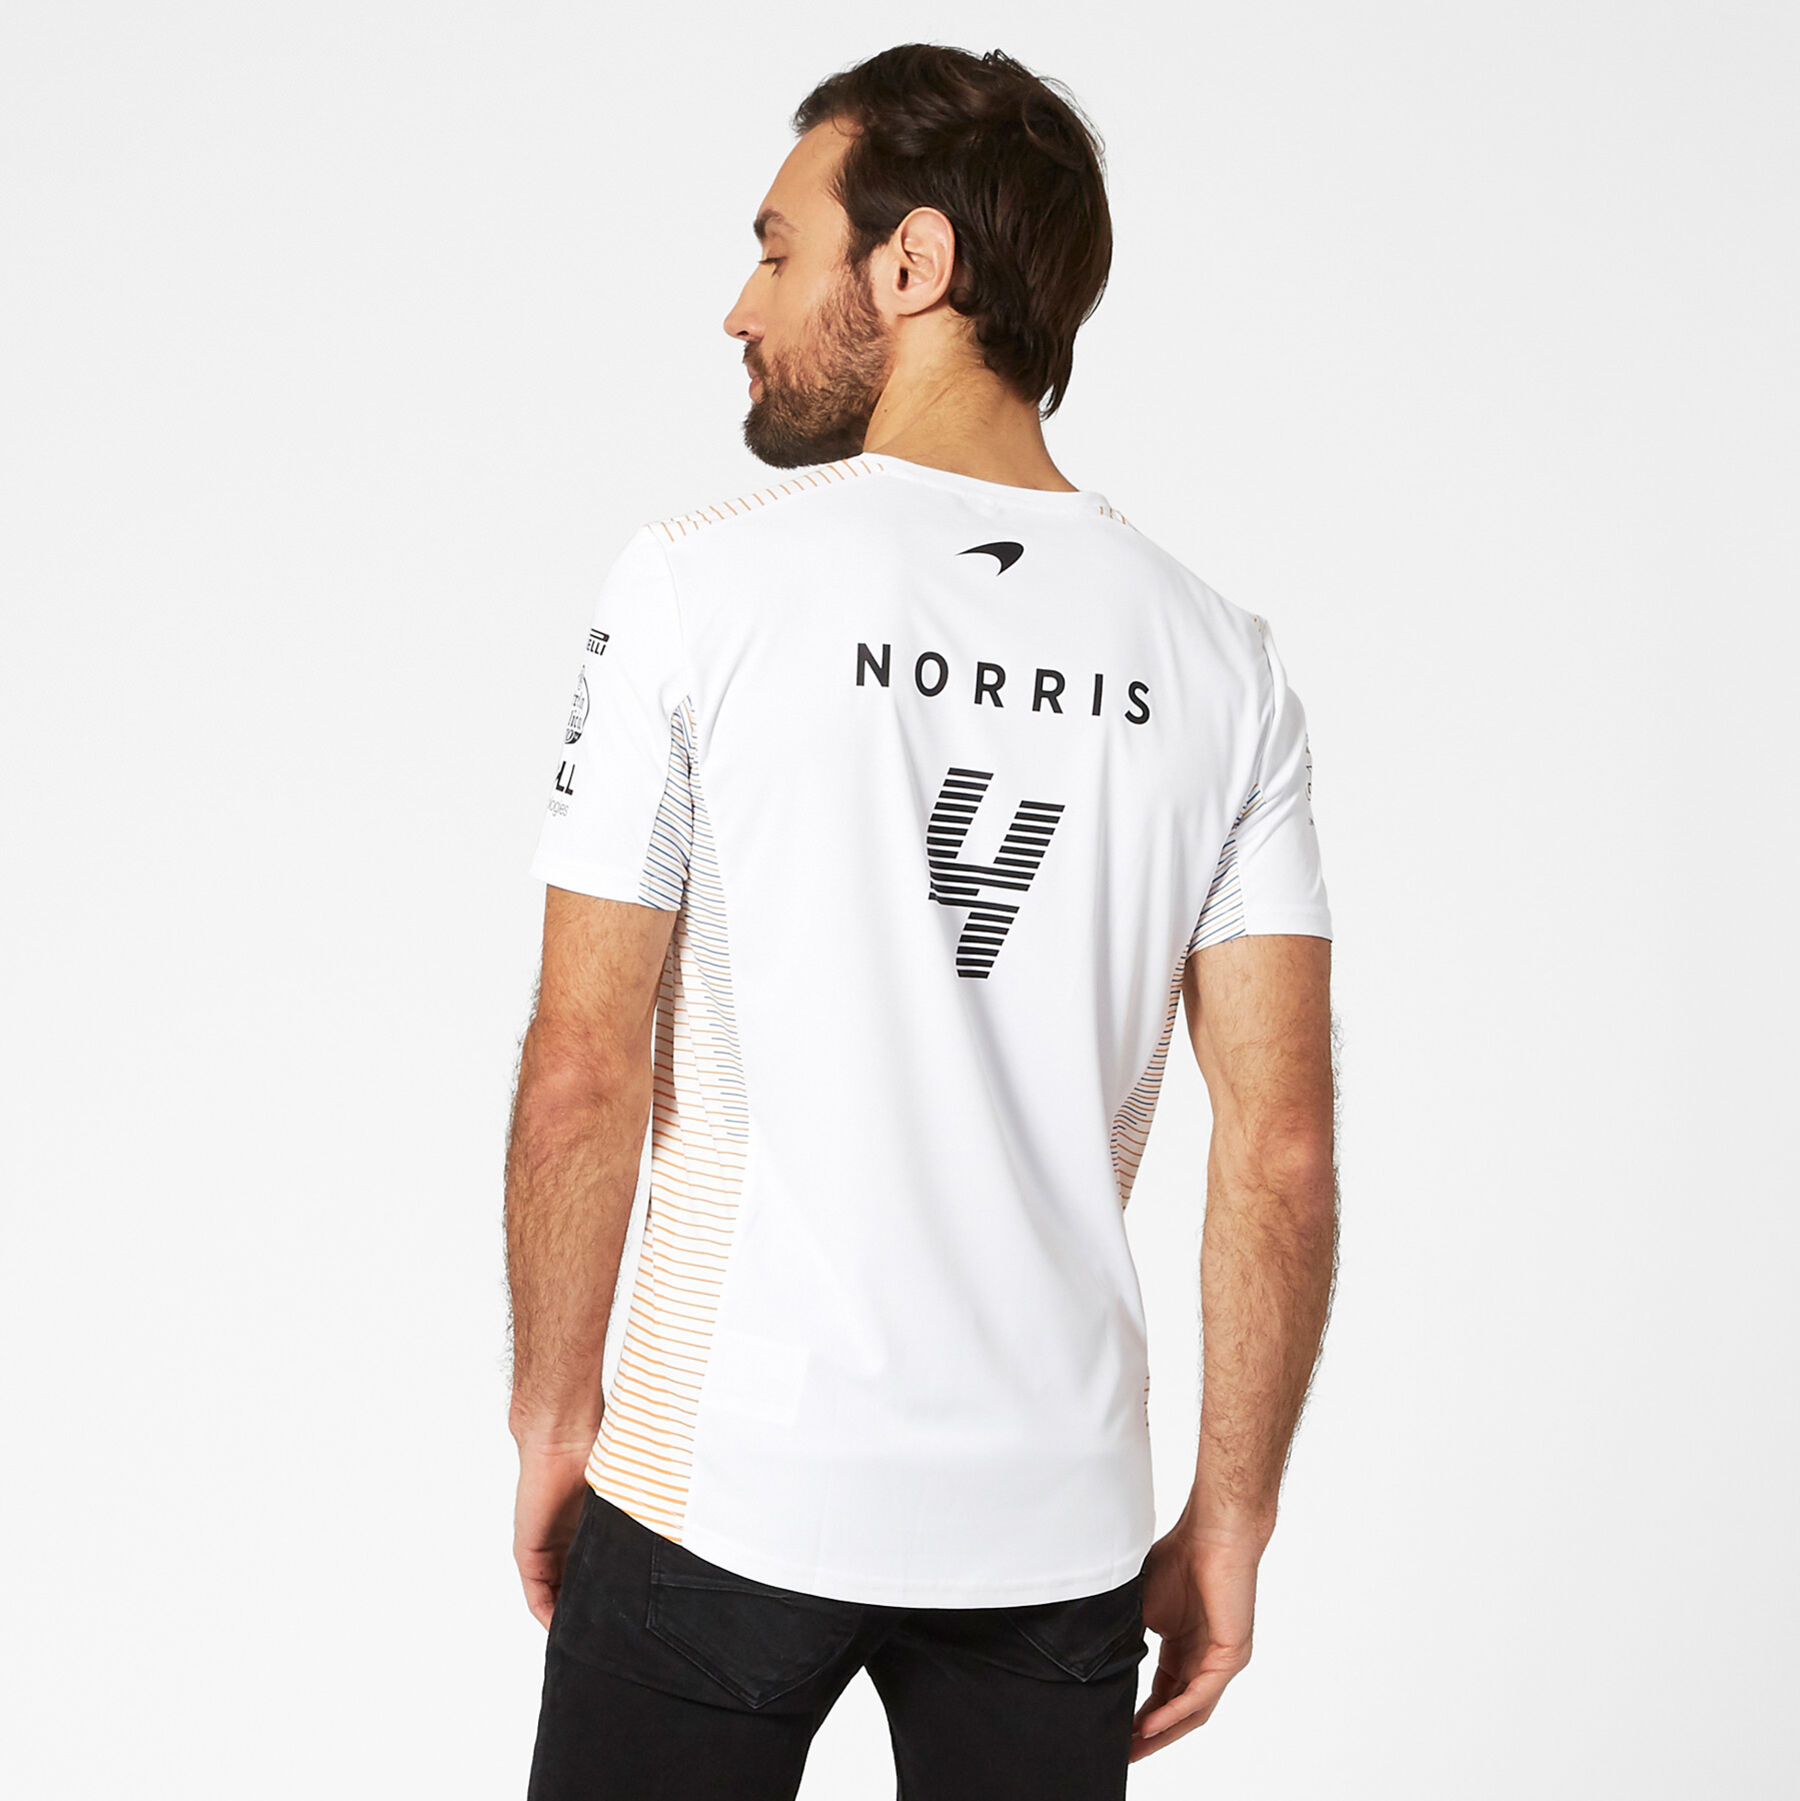 McLaren 2020 F1 à manches courtes Lando Norris T shirt blanc livraison gratuite au R-U 